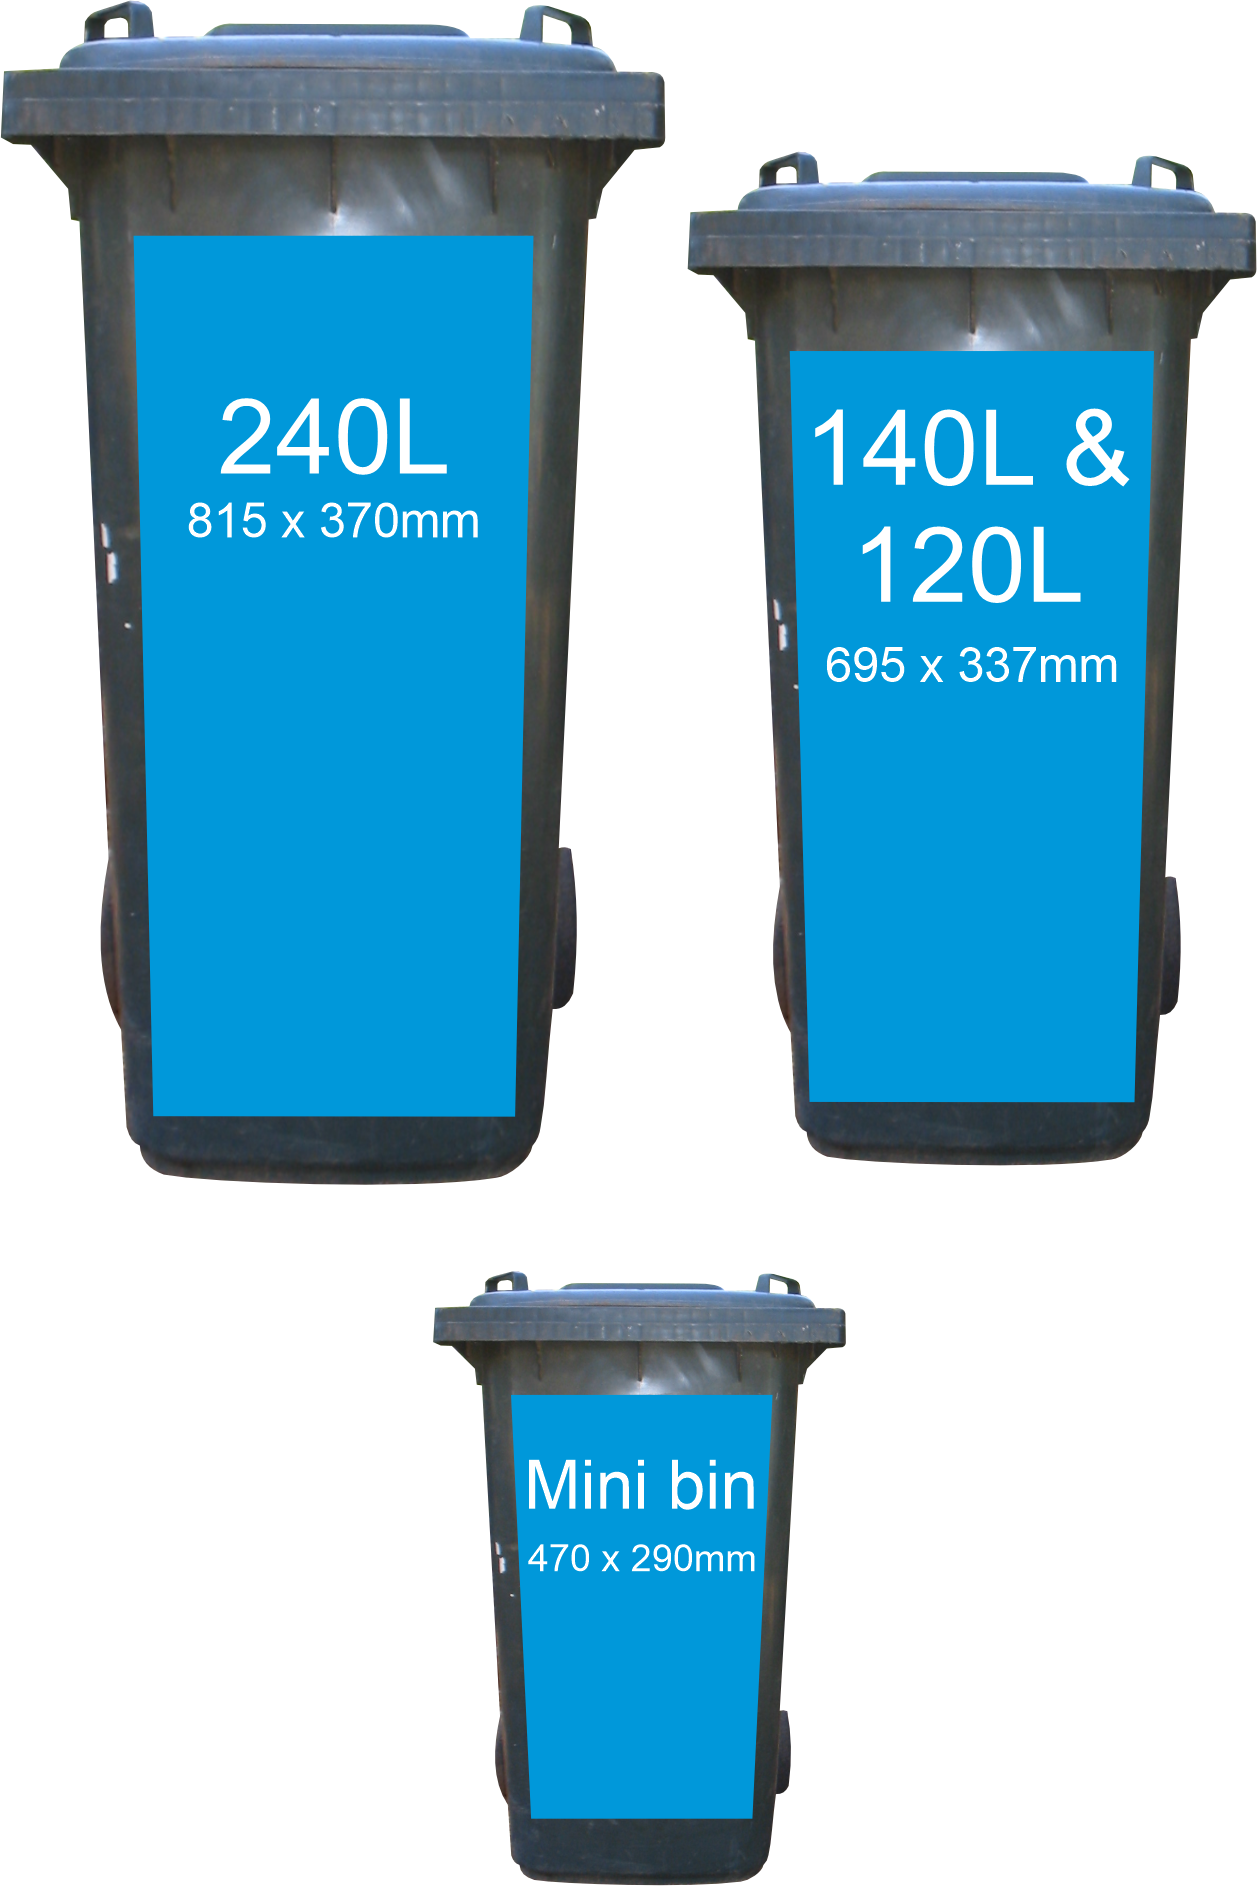 sizes in Boat shed wheelie bin sticker